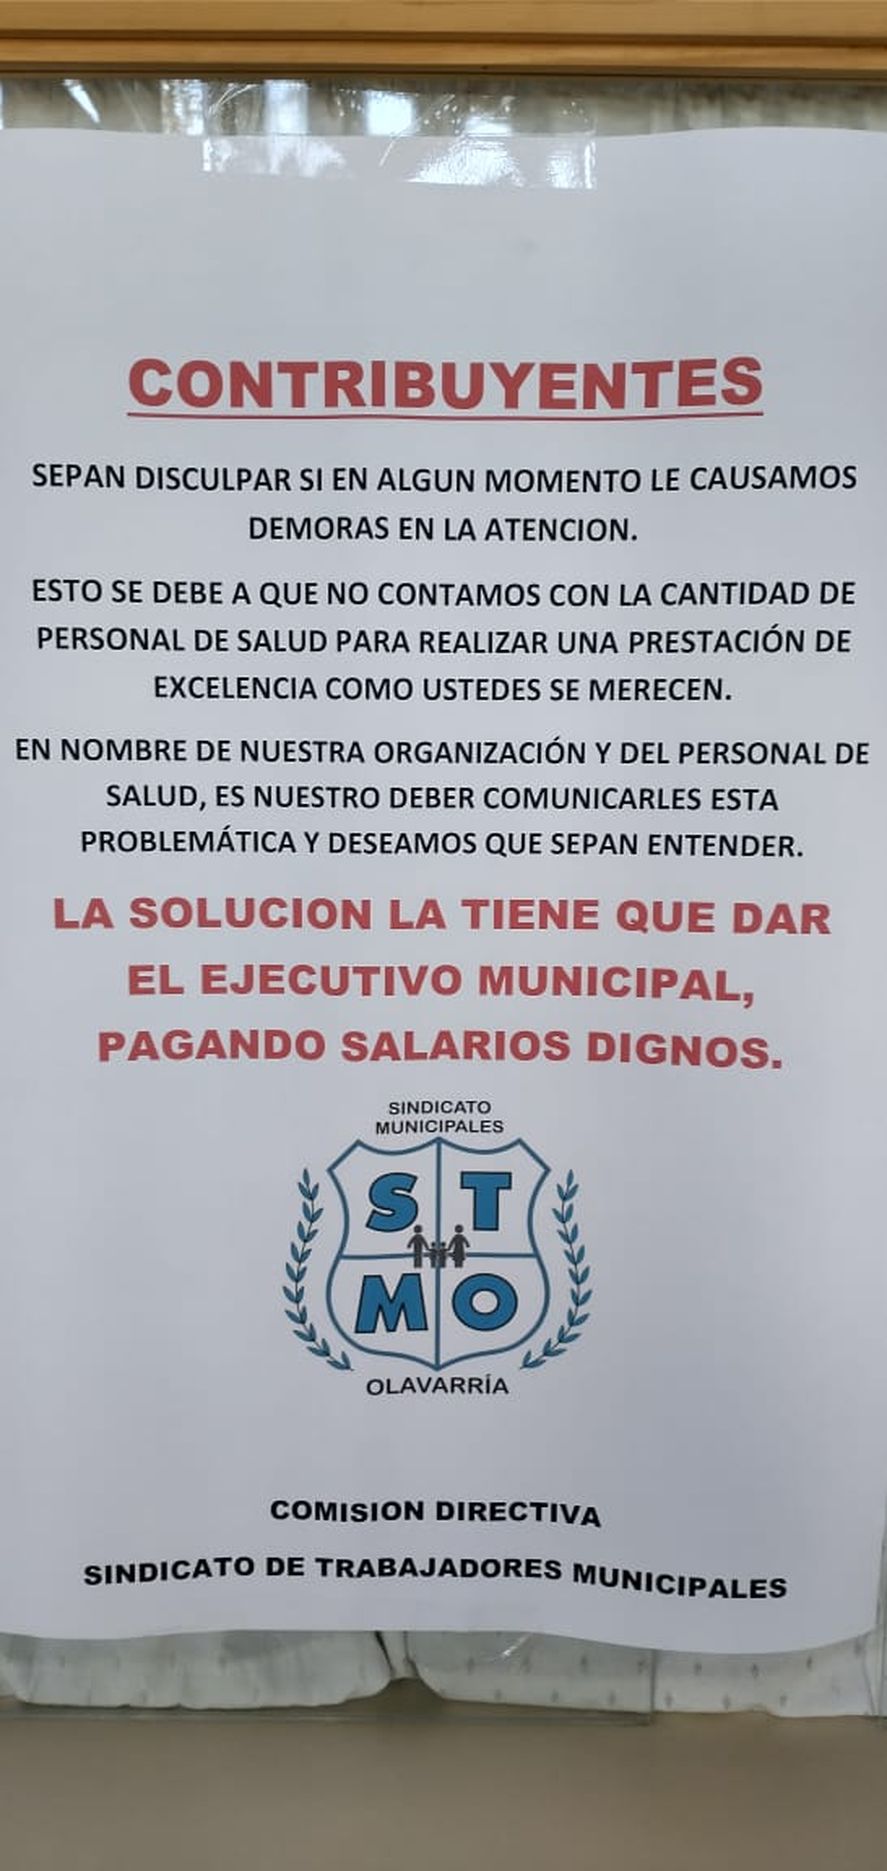 municipales de Olavarría realizan asambleas en el Hospital y solo garantizan personal para las urgencias.